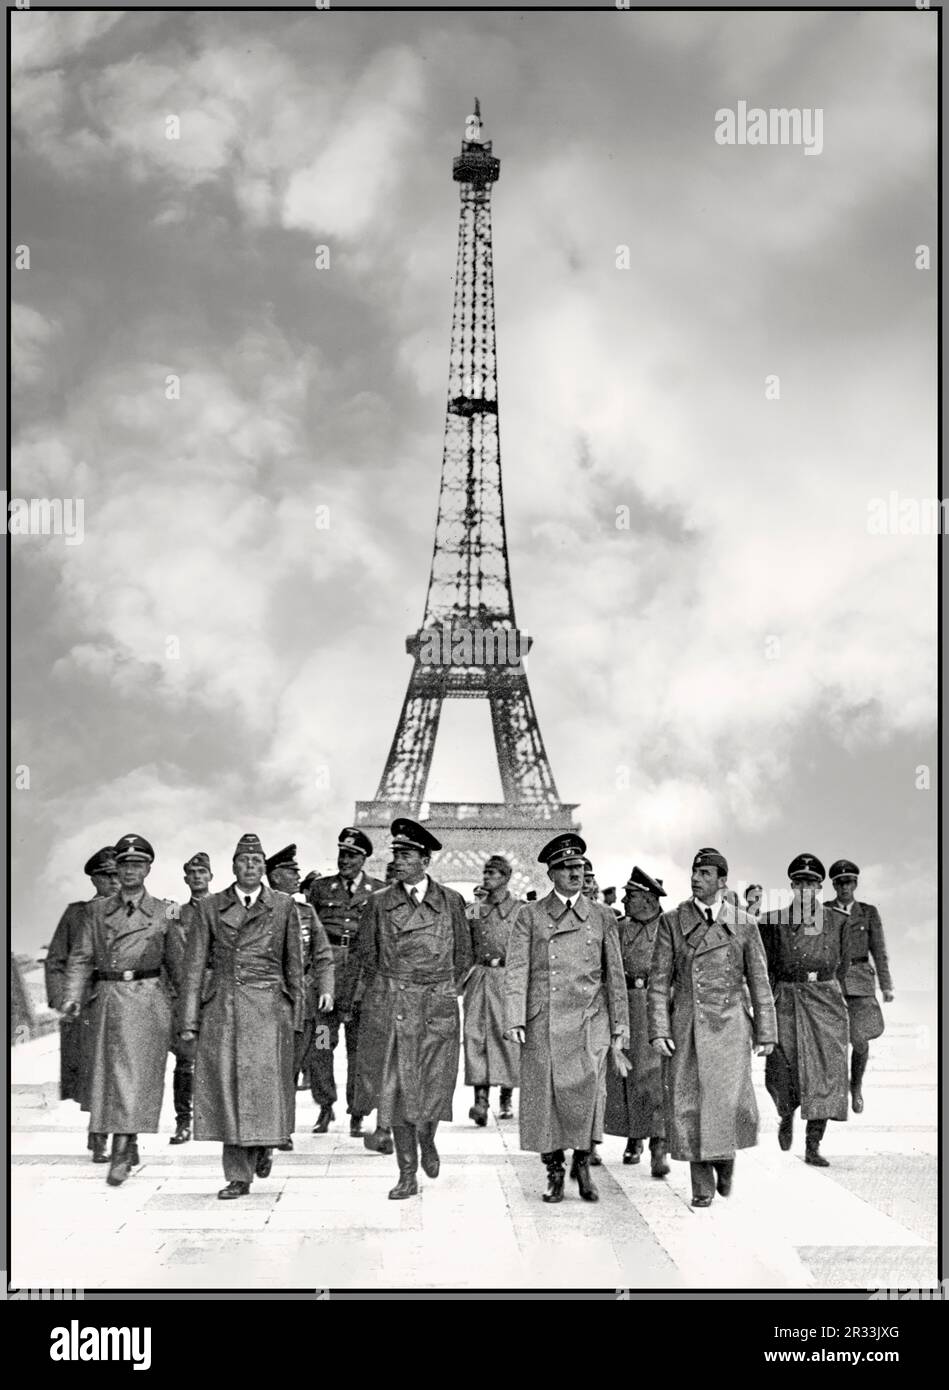 ADOLF HITLER PARIS 1940 EIFFEL TOWER OCCUPATION PROPAGANDA World War II ...